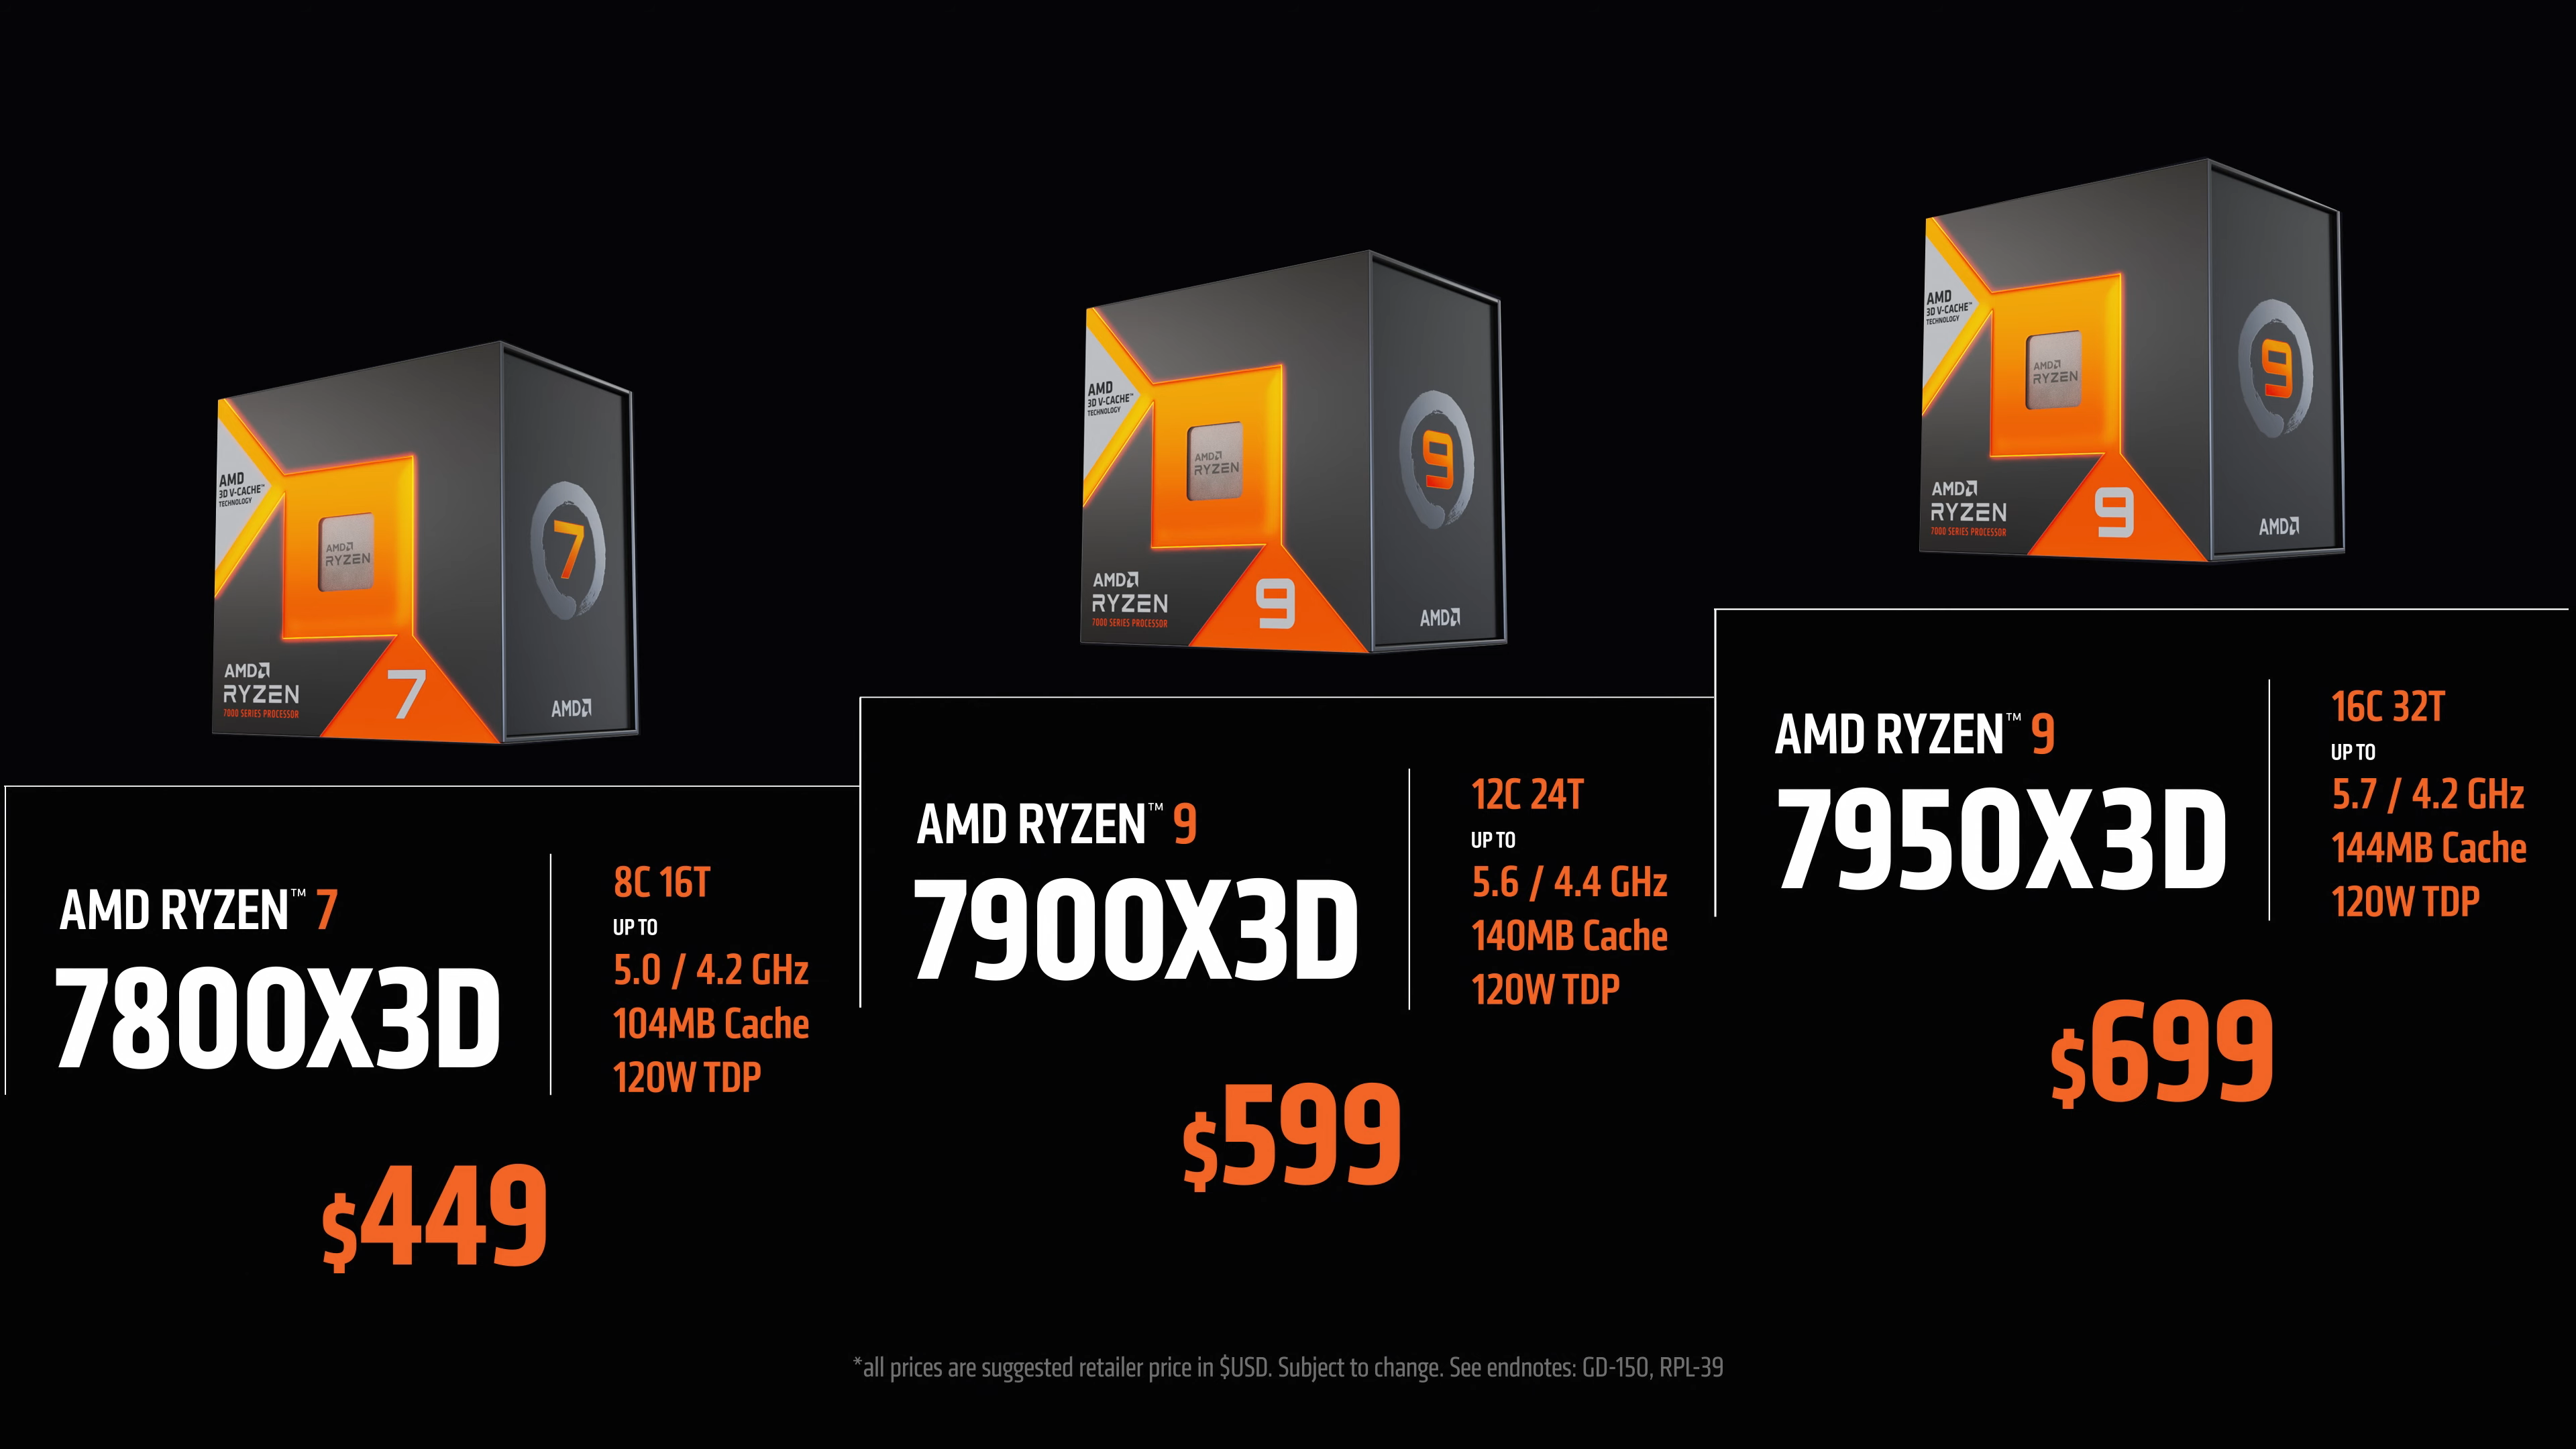 7800x3d 7900x3d 7950x3d and Ryzen processors